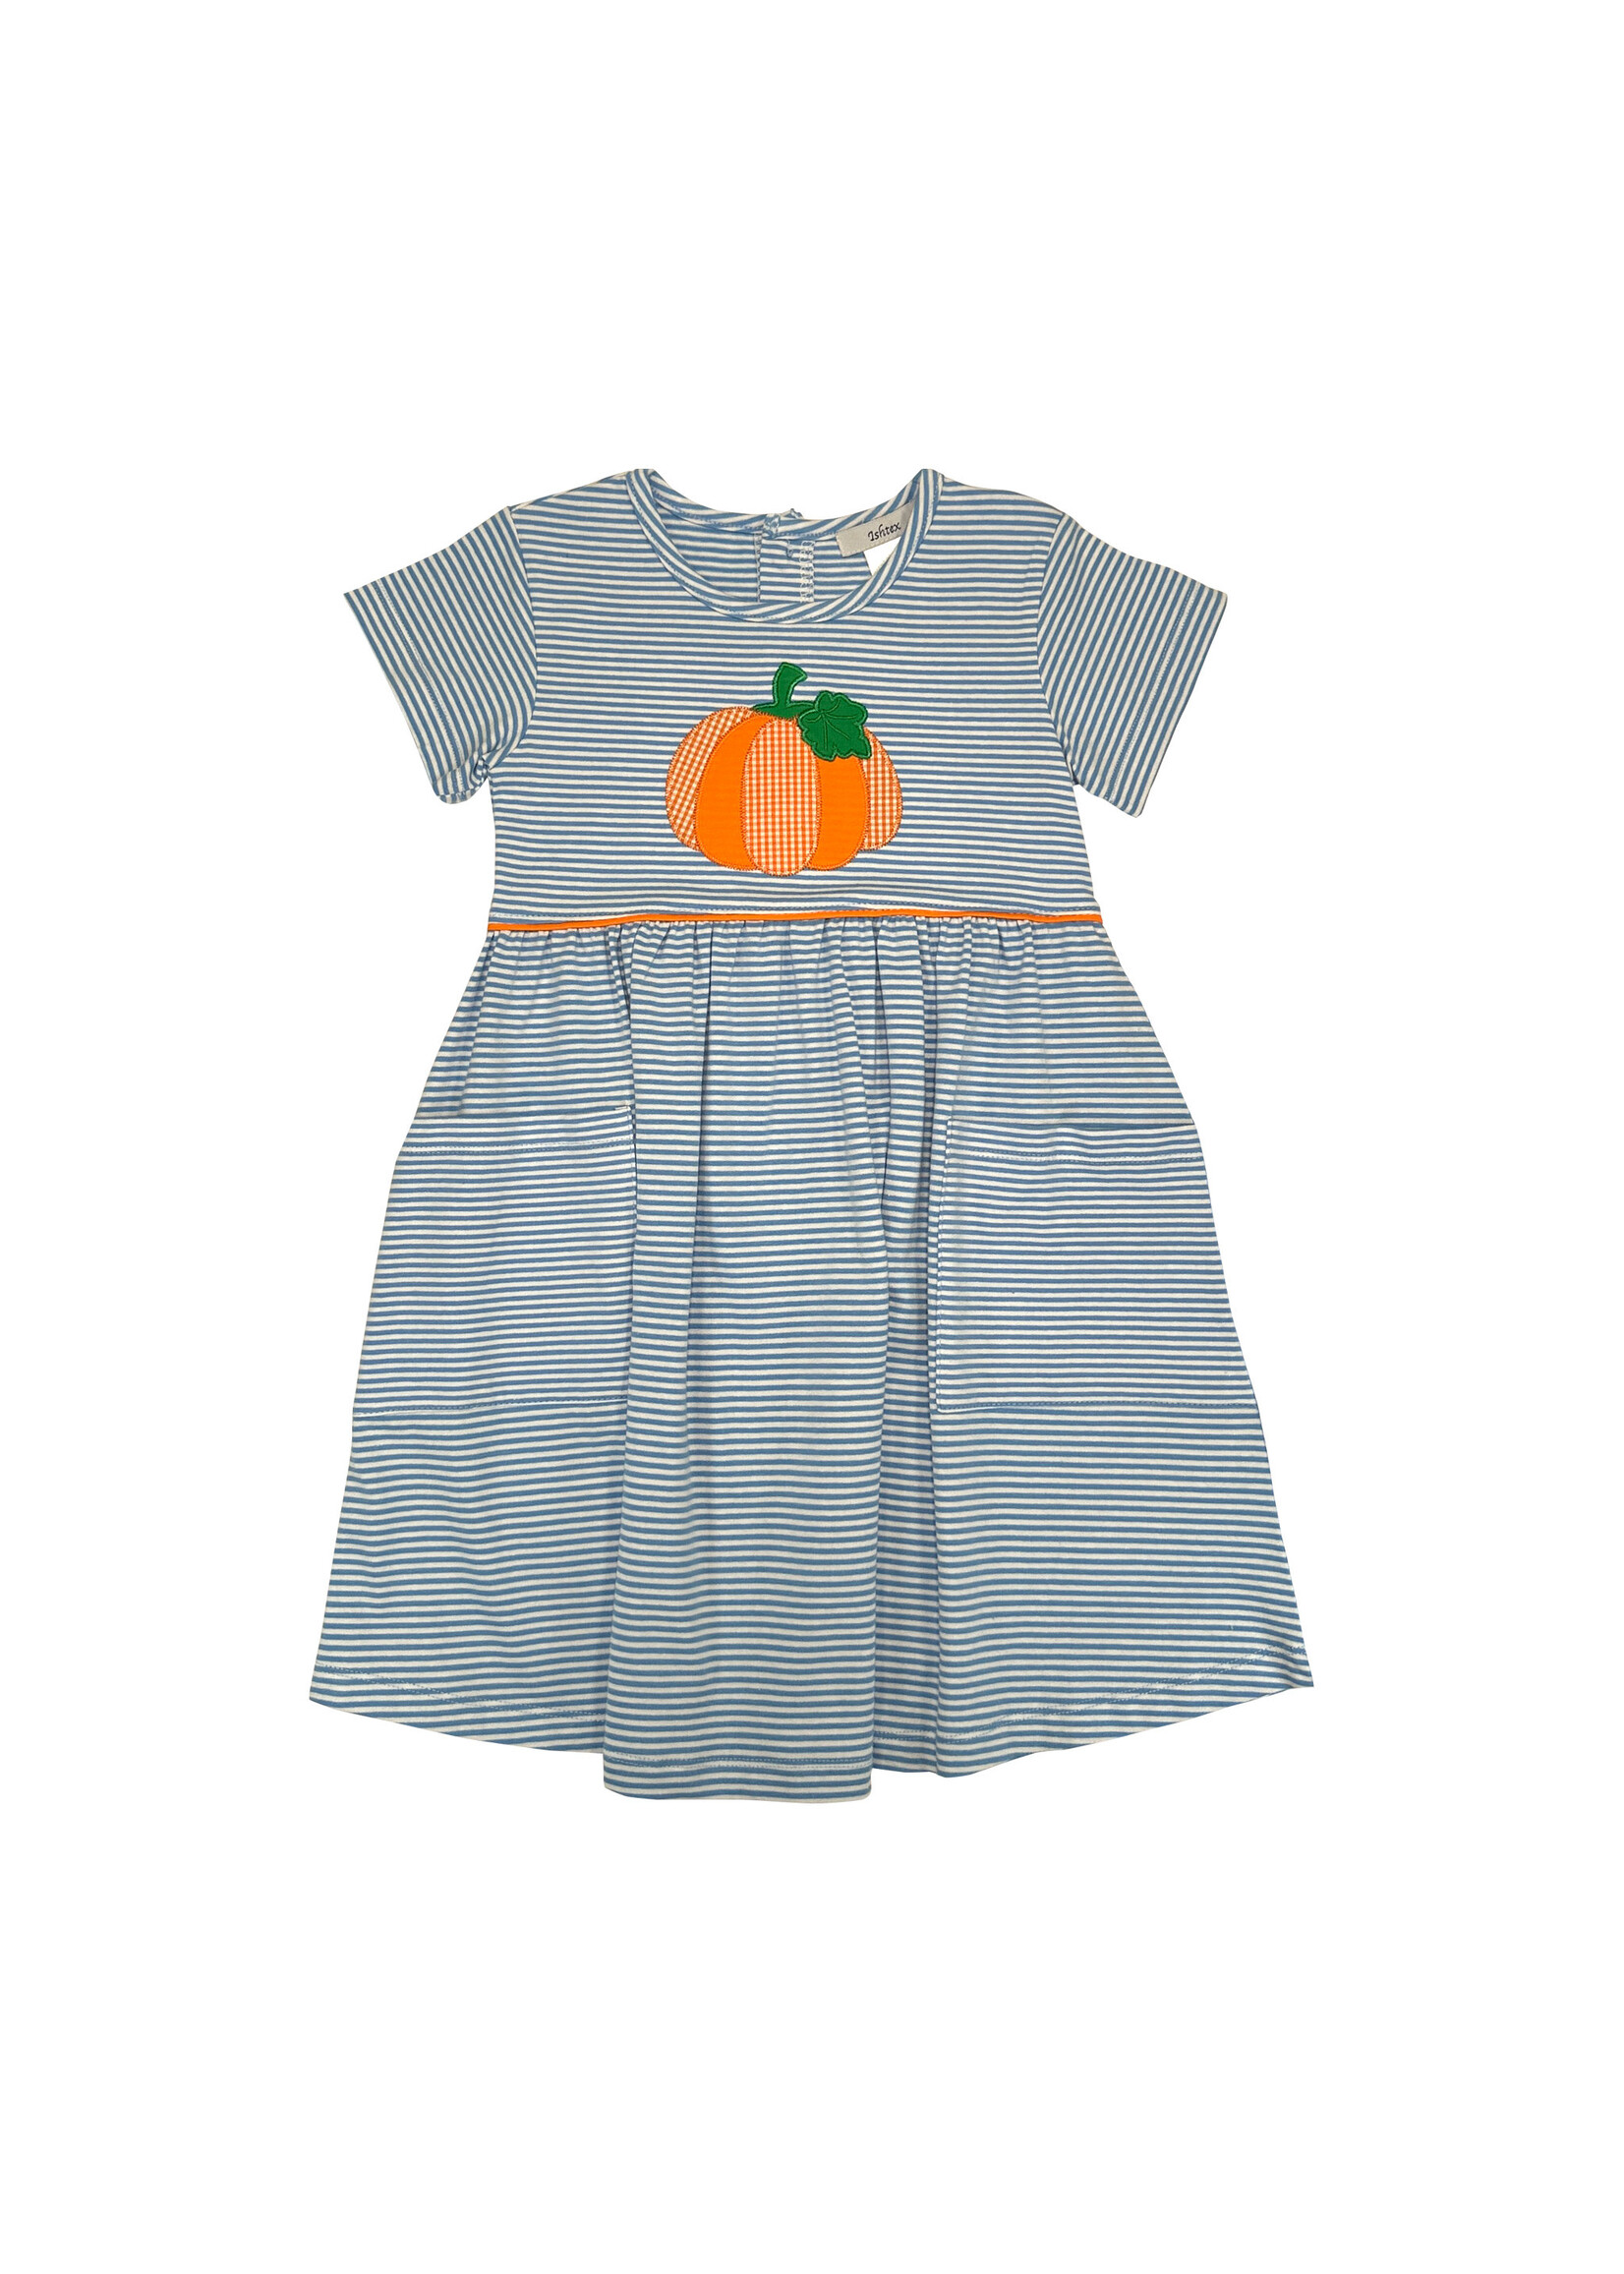 Ishtex Pumpkin Applique Dress